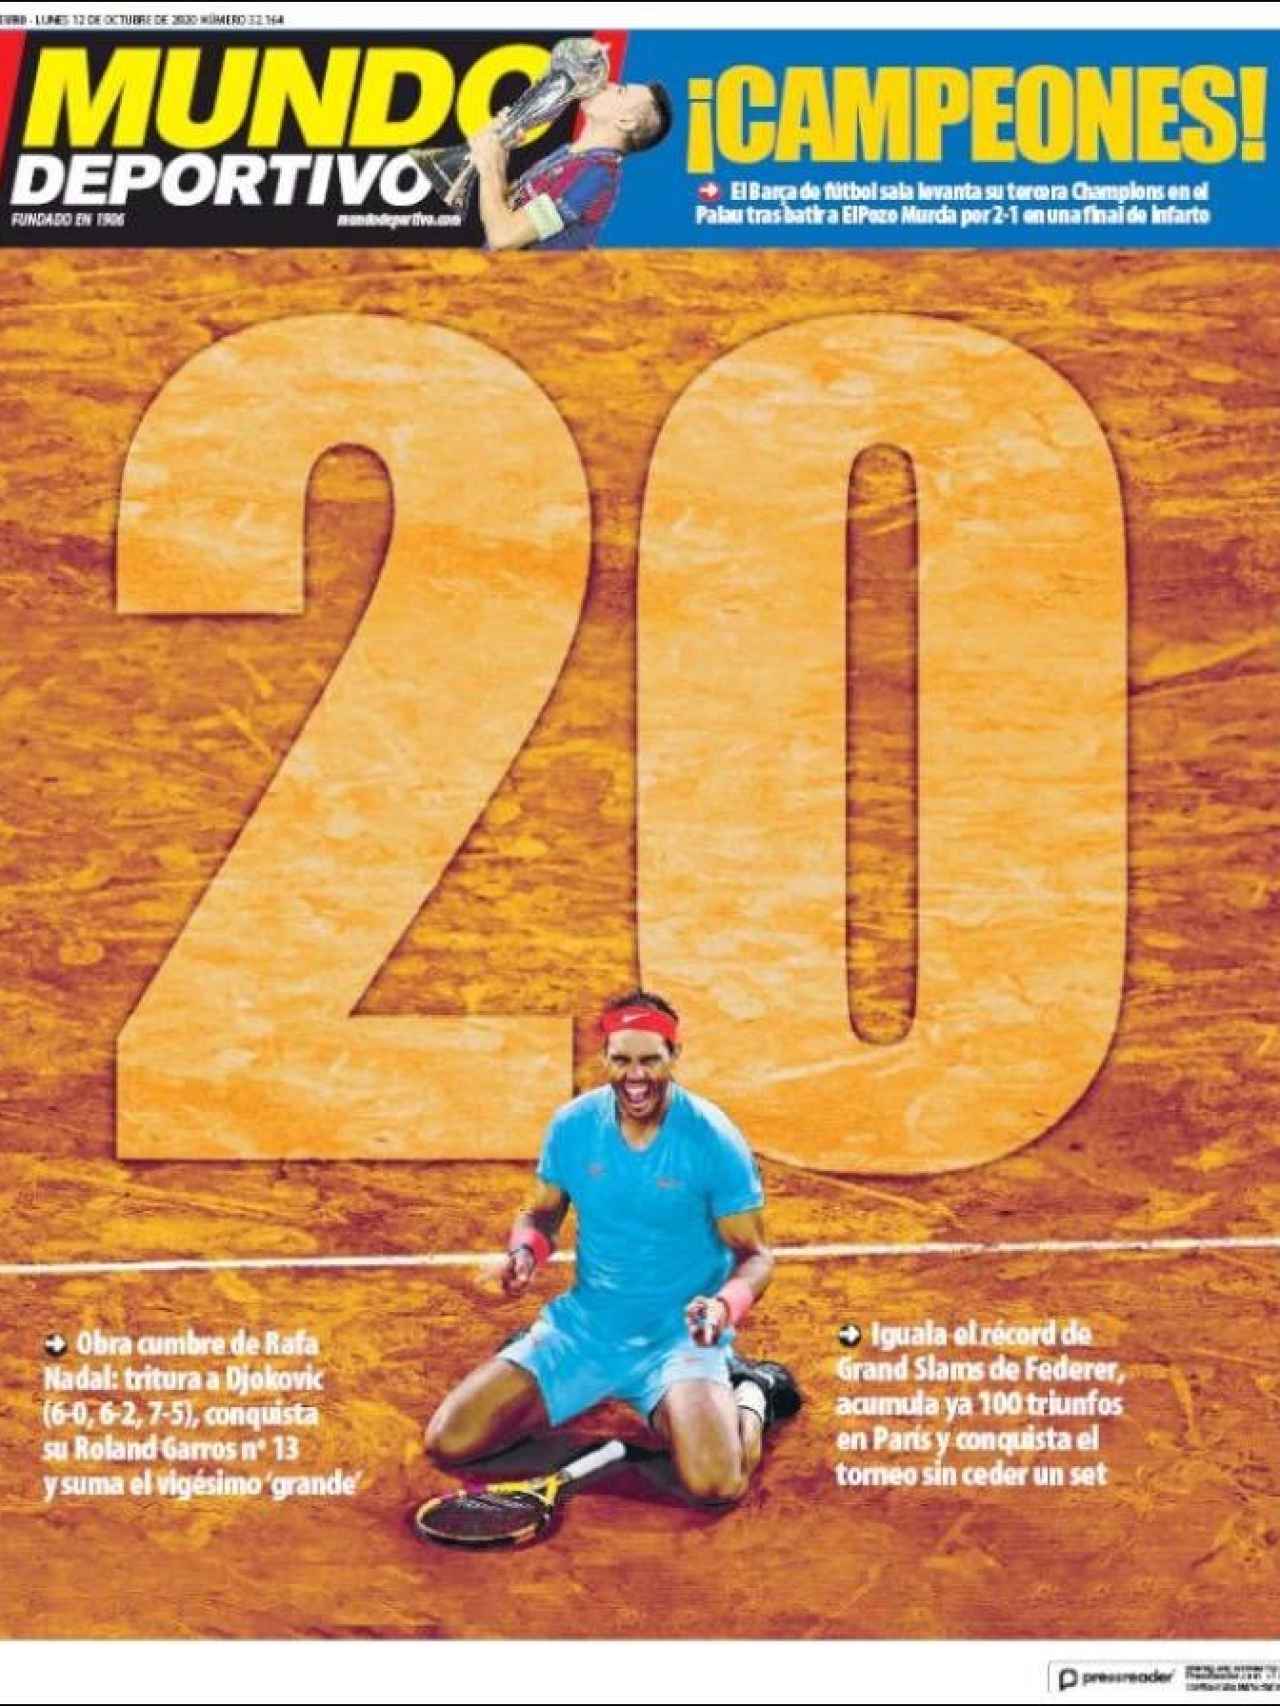 La portada del diario Mundo Deportivo (12/10/2020)